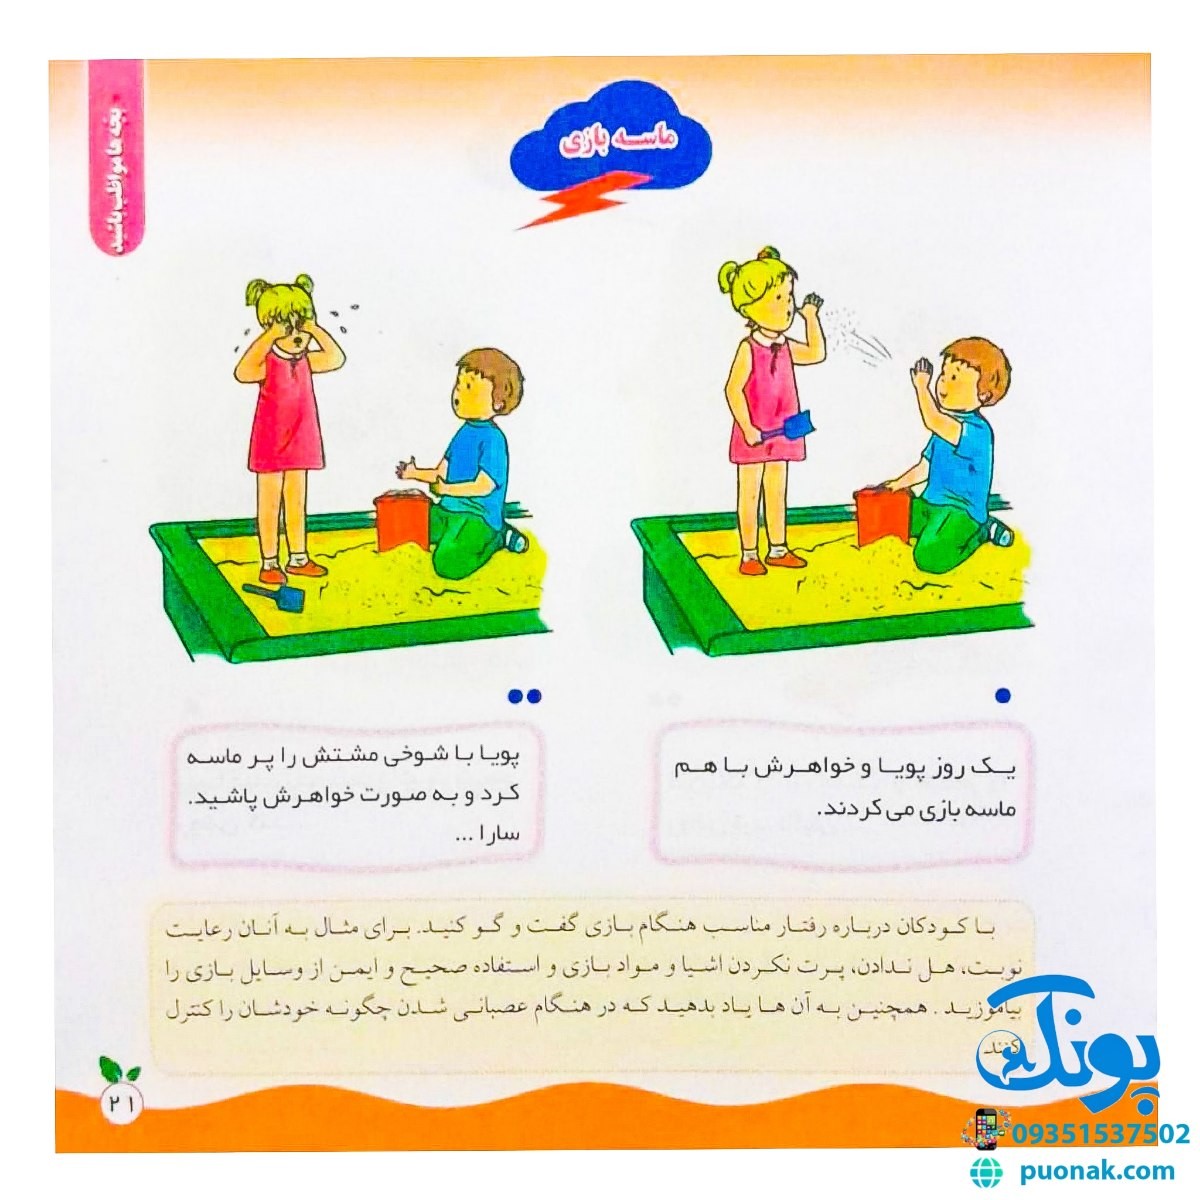 مجموعه کتاب های مهارت محور کفشدوزک جلد سی و ششم ۳۶ (بچه ها مواظب باشید) تقویت مهارت های اساسی کودکان ۳ تا ۶ سال